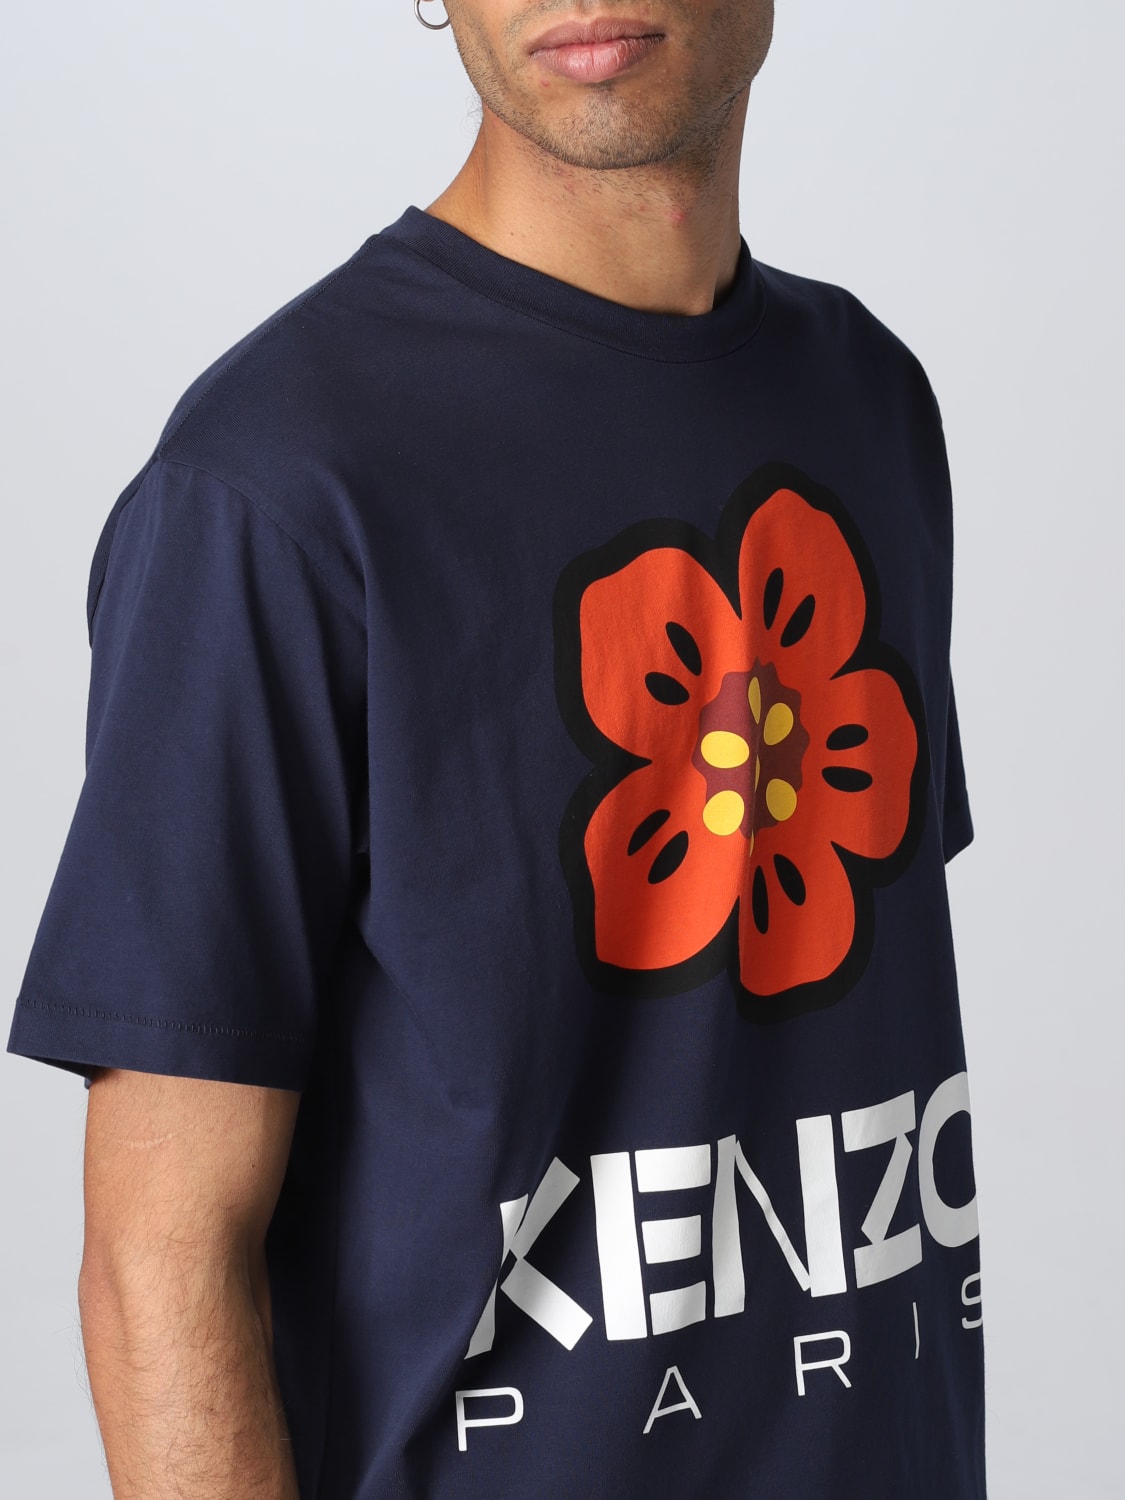 6,900円KENZO 赤 Tシャツ